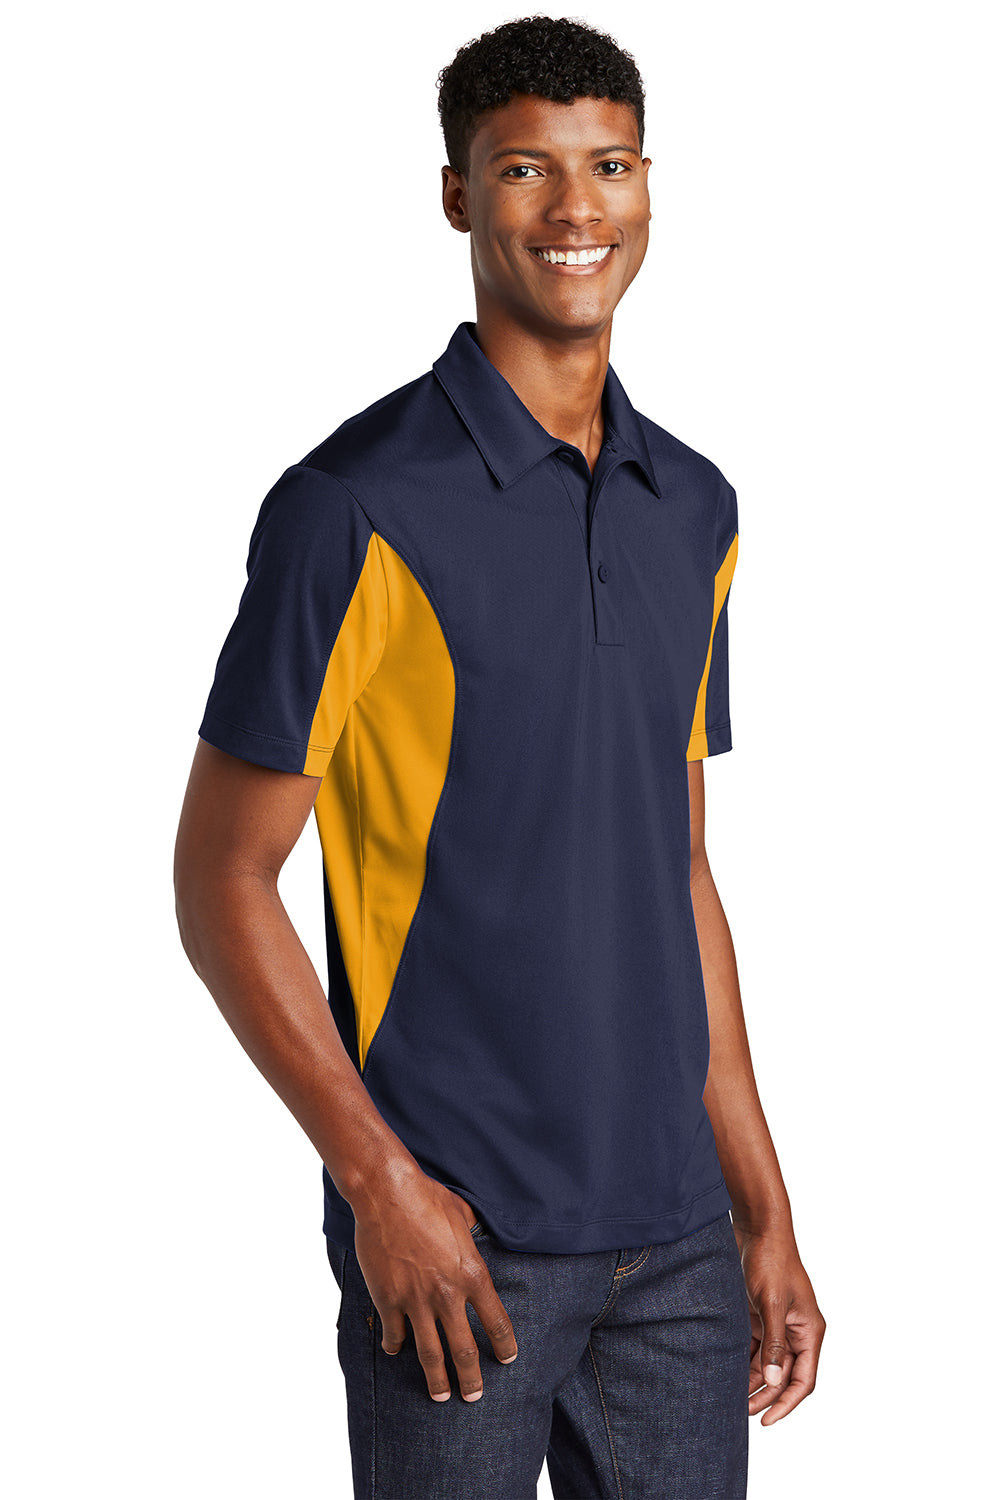 Sport-Tek Mens Sport-Wick Moisture Wicking Short Sleeve Polo Shirt True Navy Blue/Gold 3Q